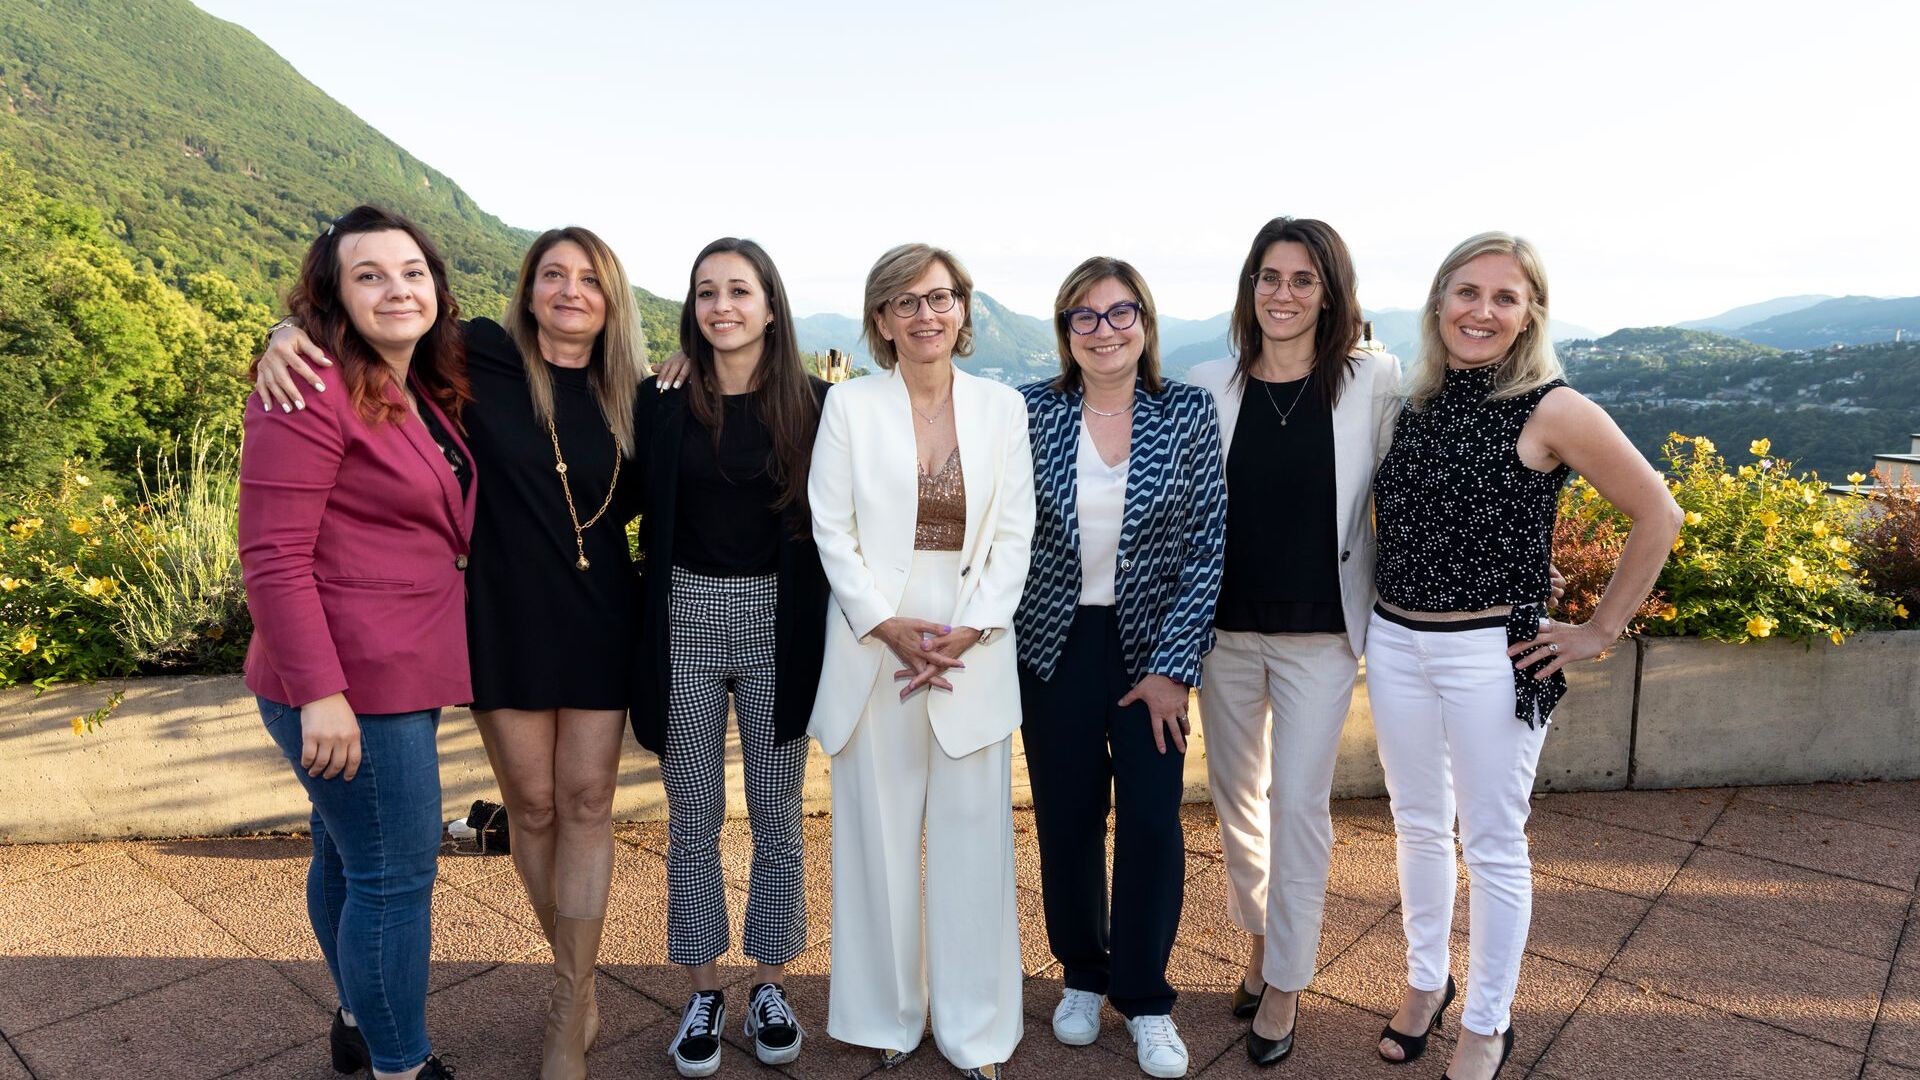 Pracovný personál, takmer výlučne ženy, združenia ated-ICT Ticino, ktoré vedie nová prezidentka Cristina Giotto